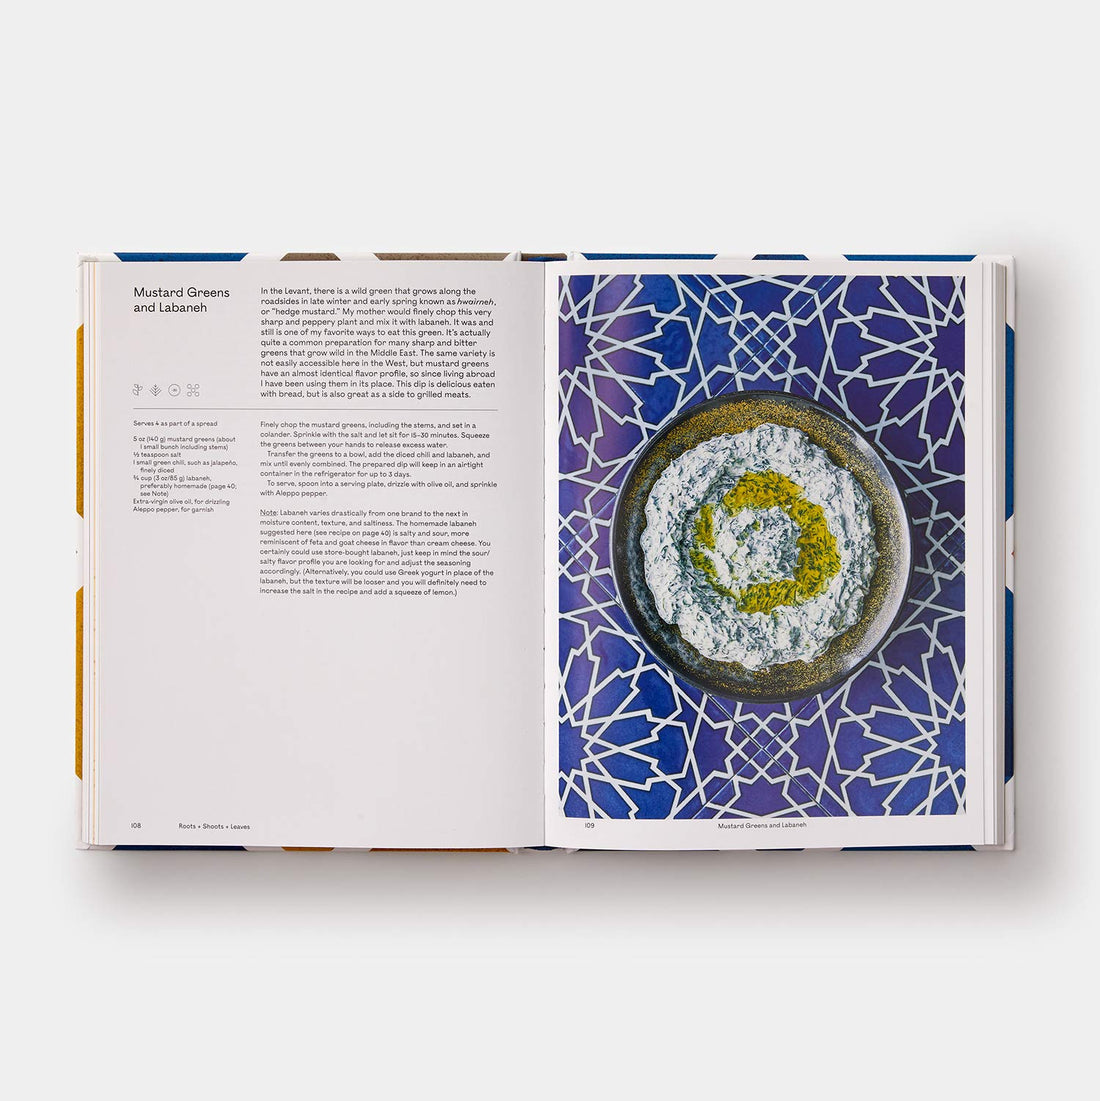 Stół arabeskowy: współczesne przepisy ze świata arabskiego